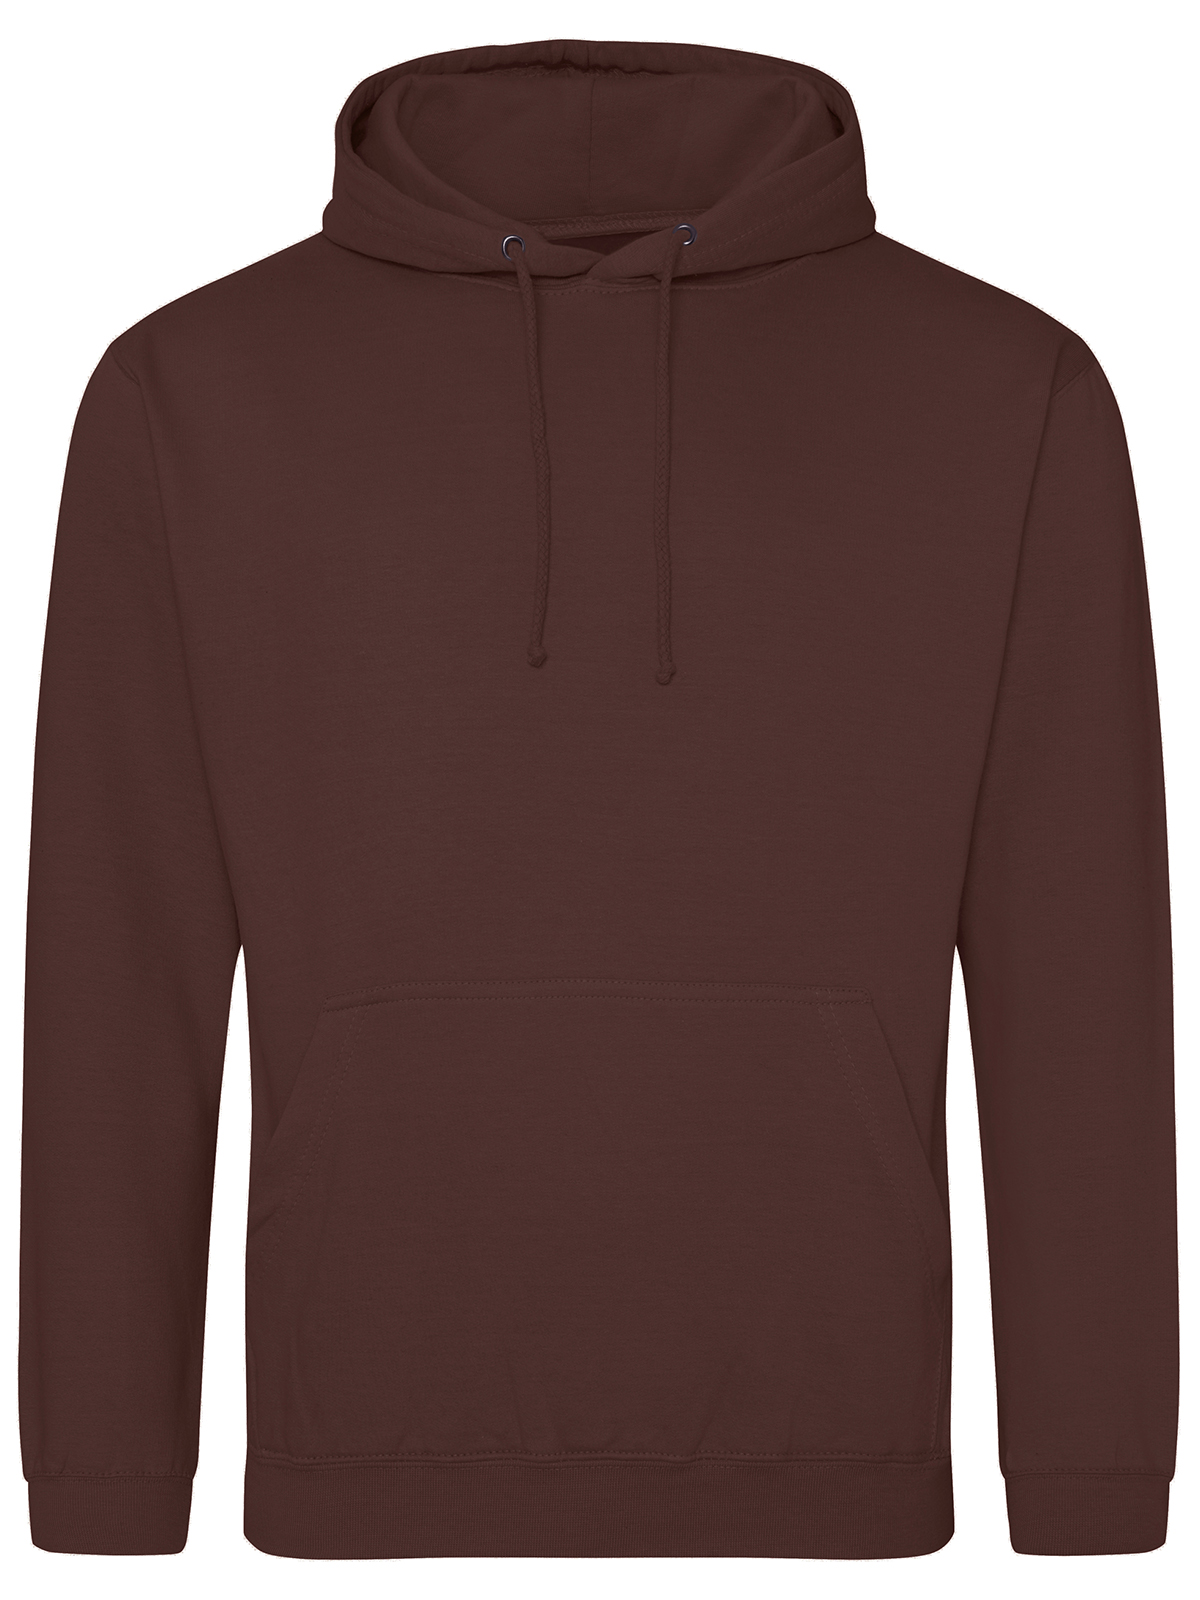 college-hoodie-chocolate-fudge-brownie.webp